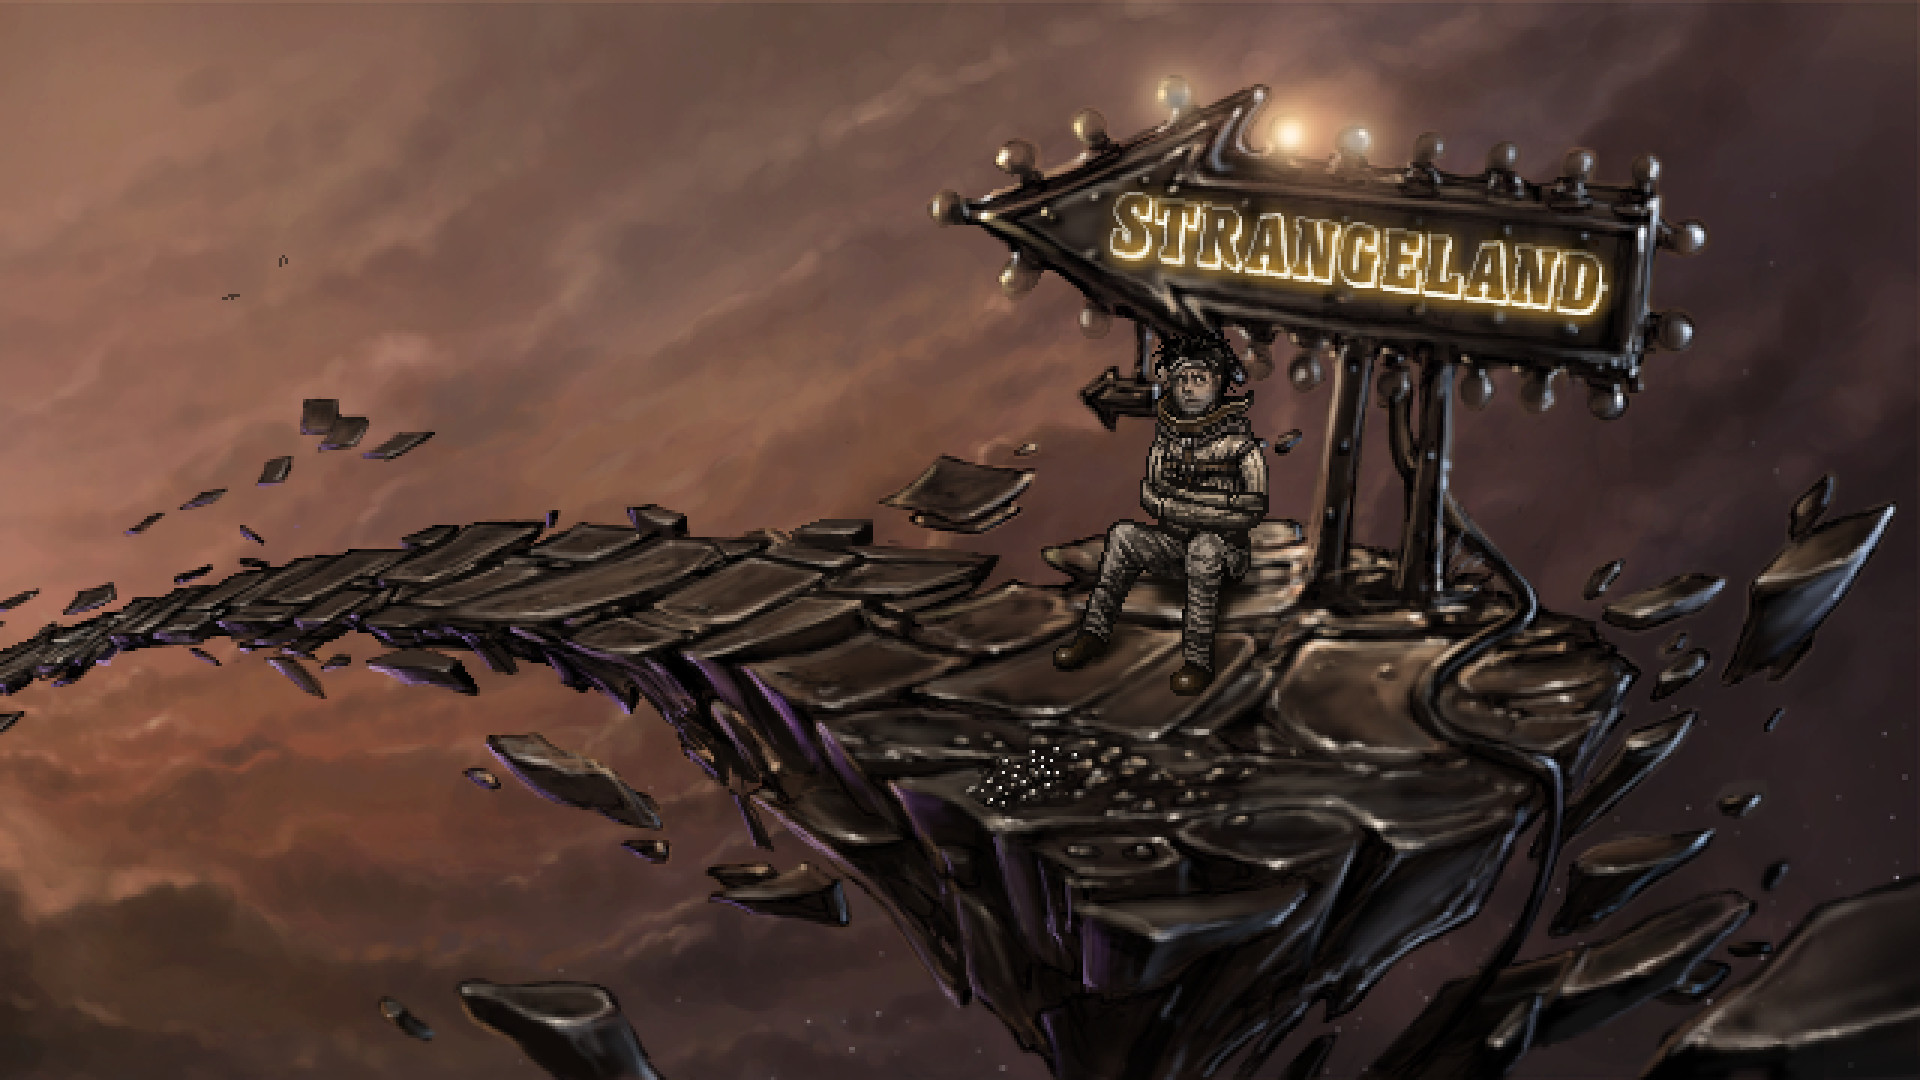 [$ 4.62] Strangeland Steam CD Key